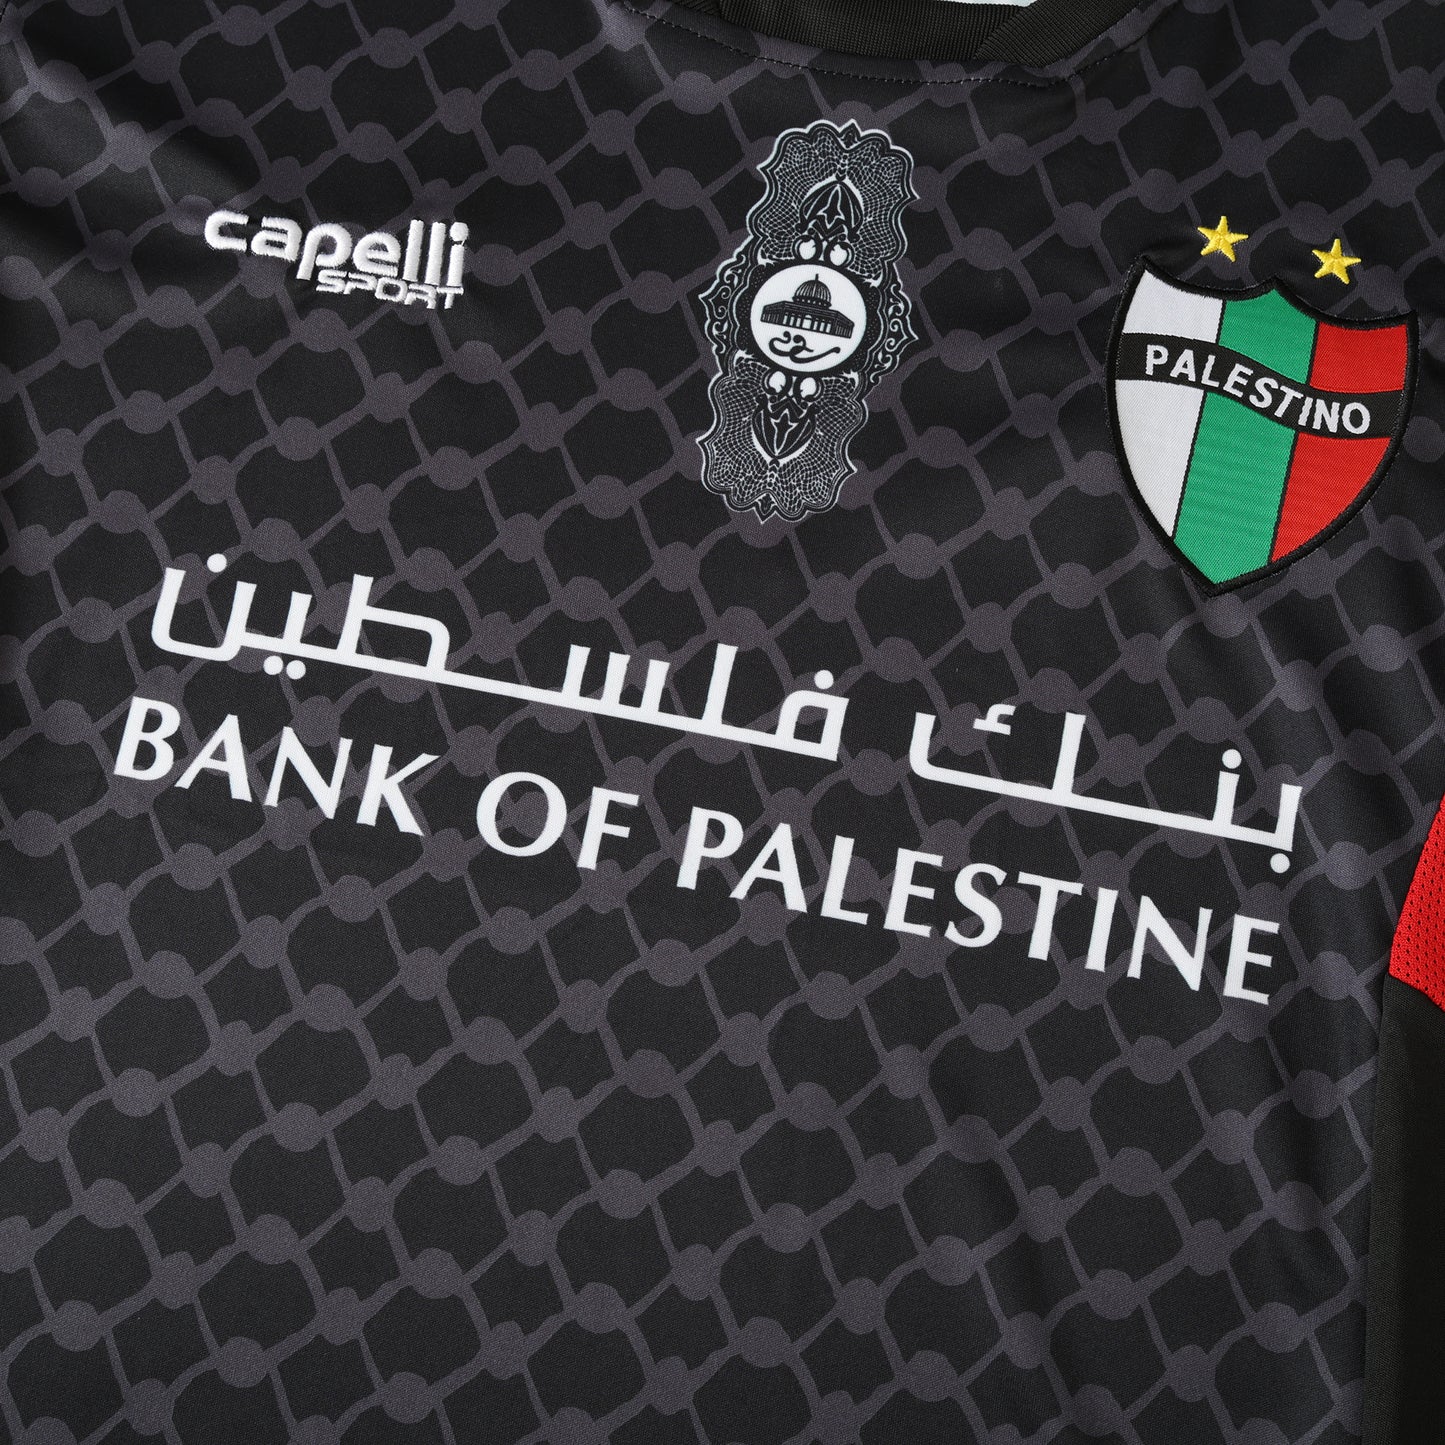 2425 Saison Palestino Auswärts Fußballtrikot Maillot Trikot Maglia